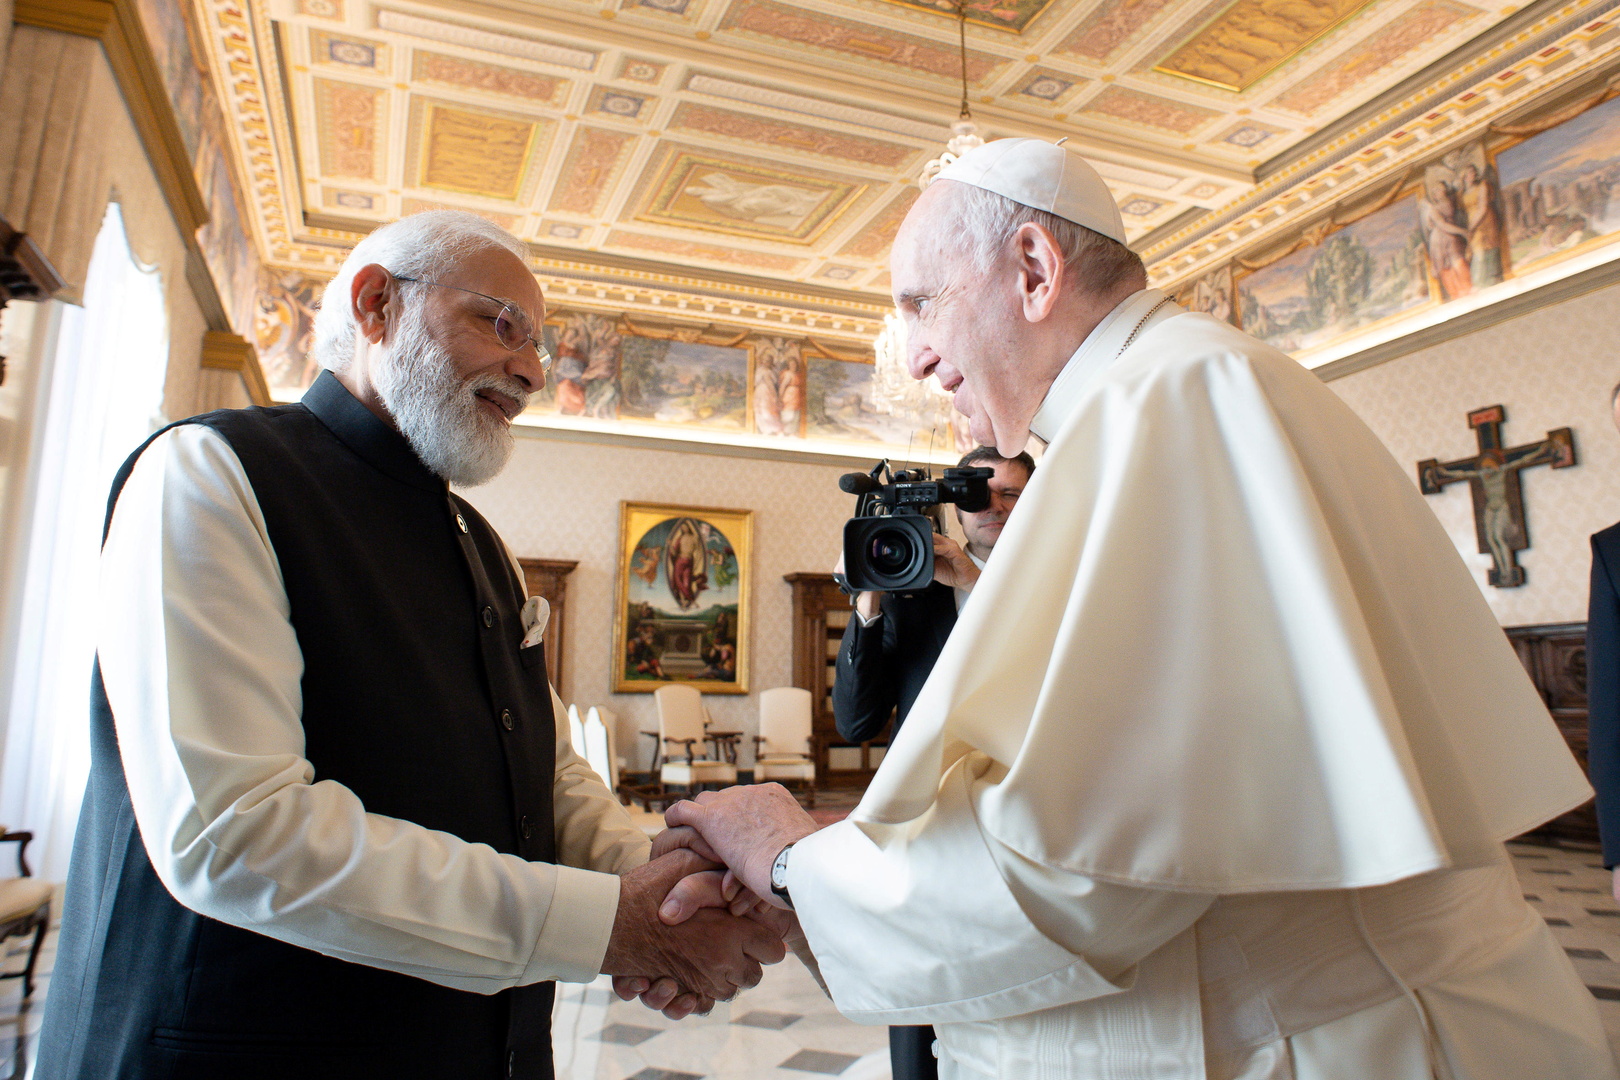 البابا فرنسيس يوافق على القيام بأول زيارة بابوية إلى الهند منذ أكثر من 20 عاما